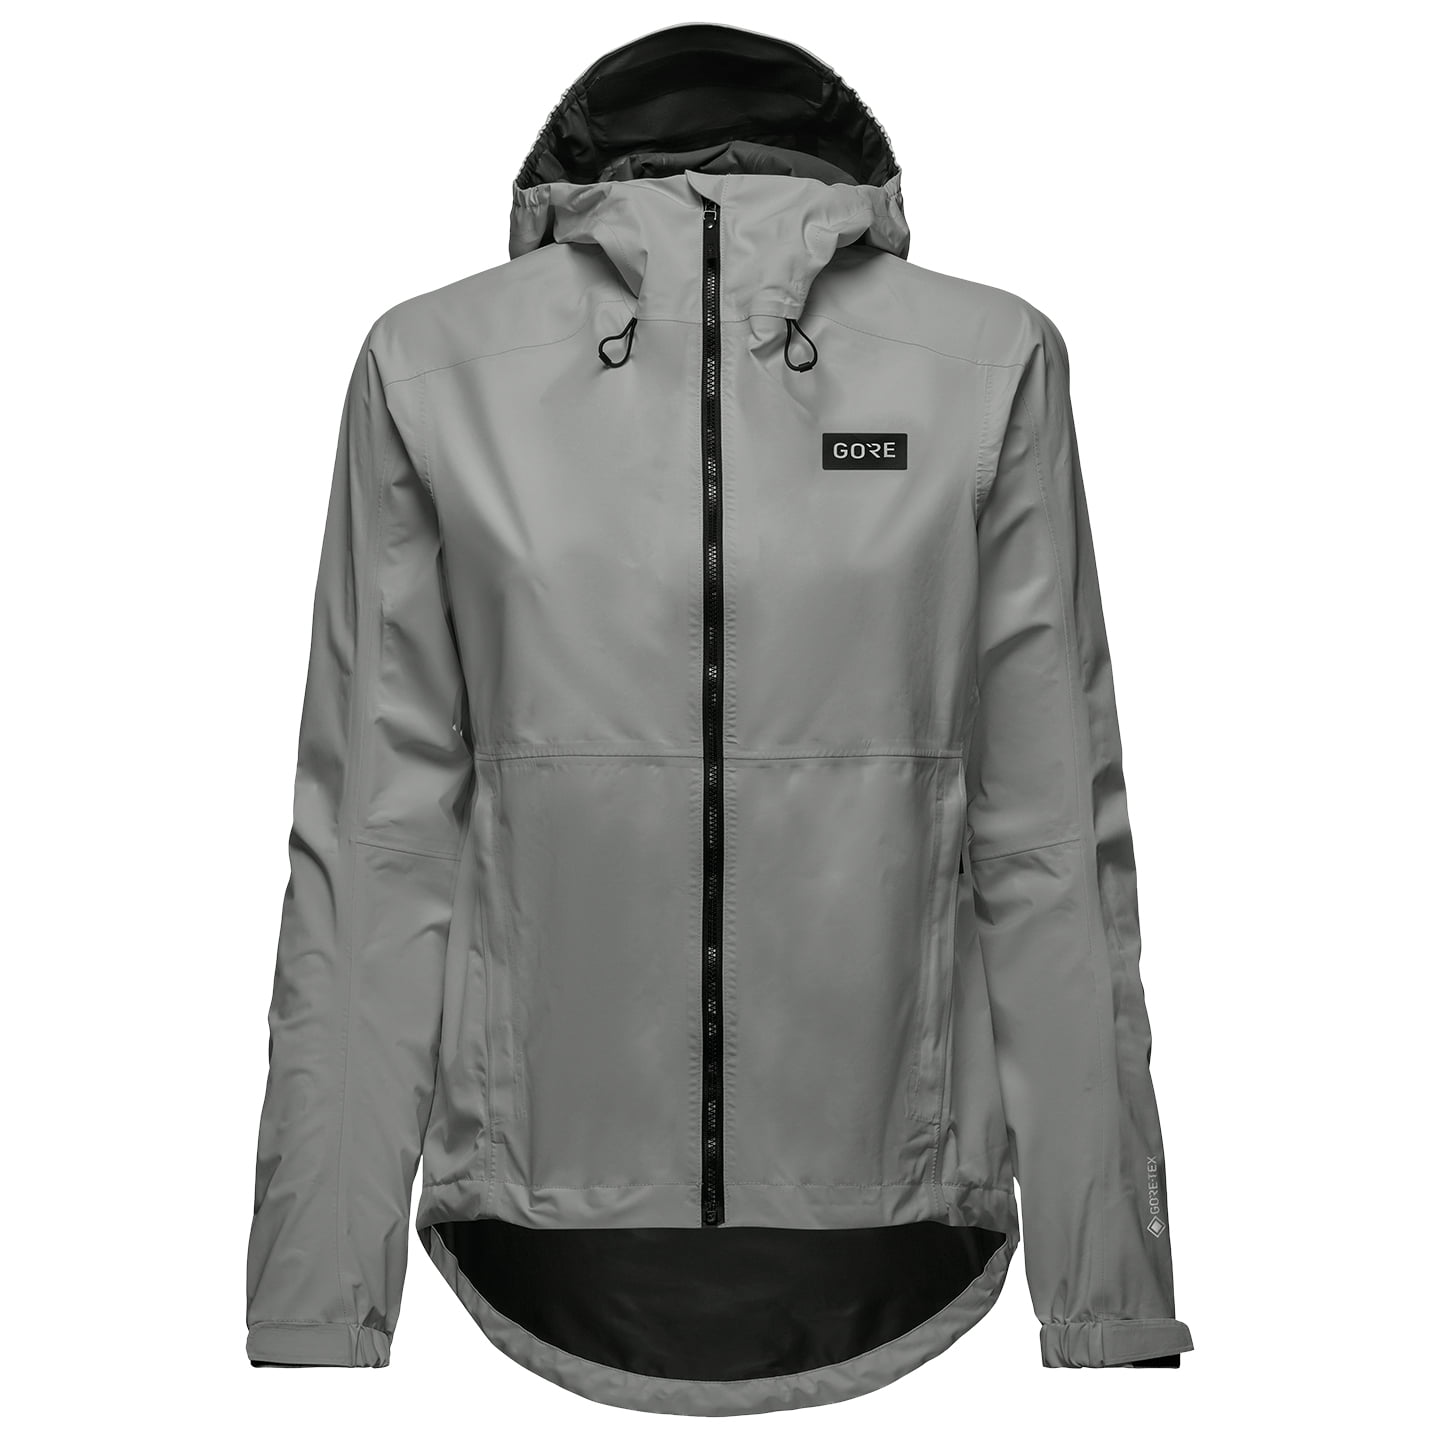 GORE WEAR Endure Women’s Waterproof Jacket Women’s Waterproof Jacket, size 42, Cycle coat, Rainwear